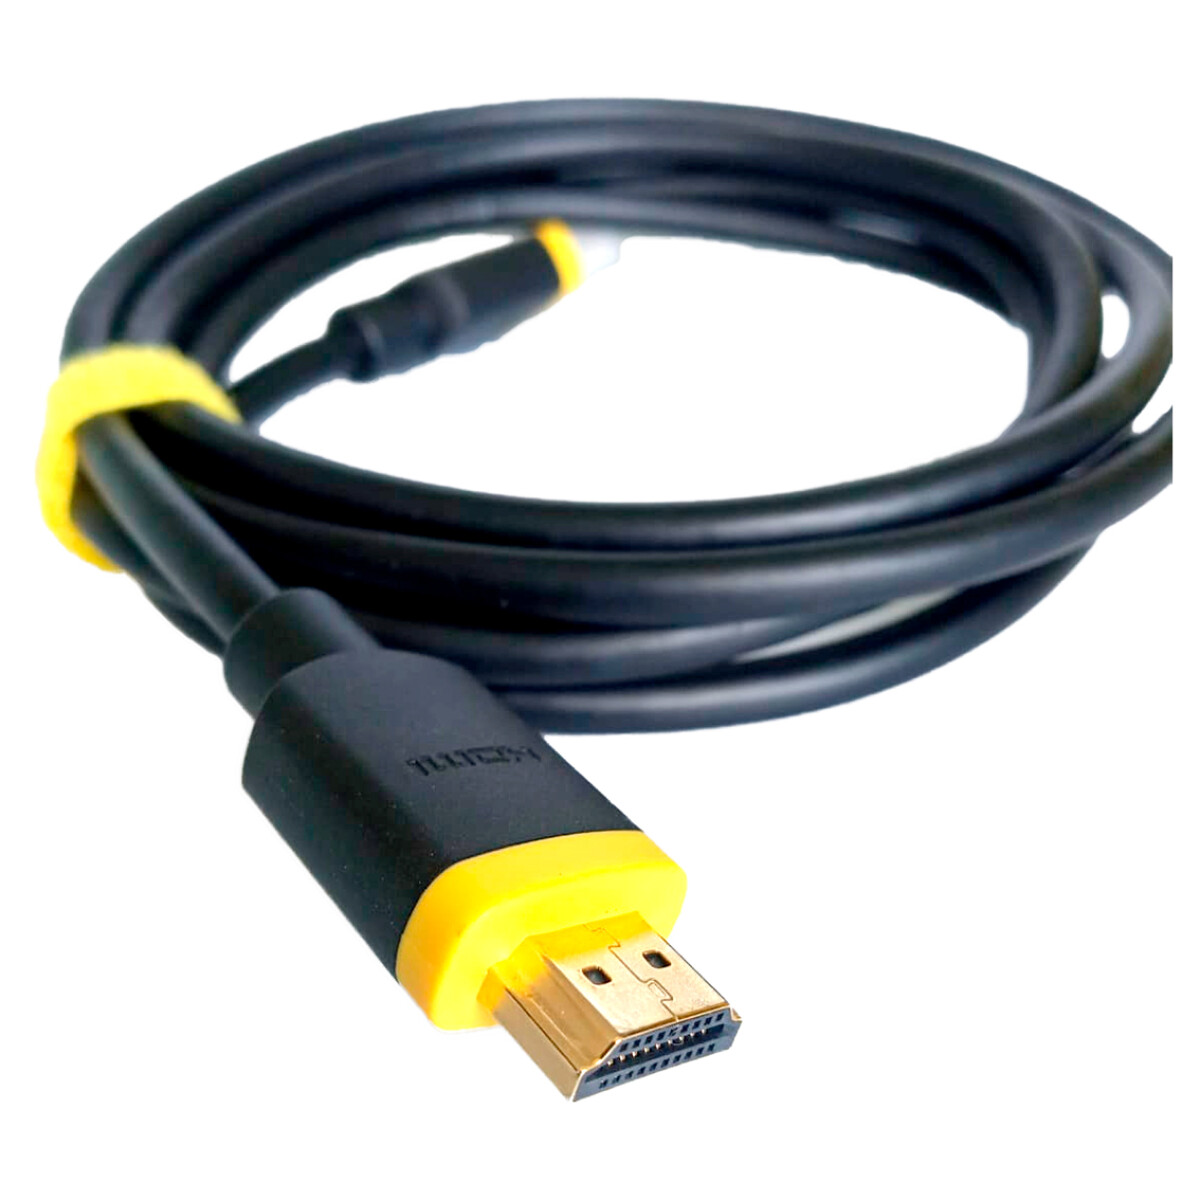 Cable Rasch Thonet & Vander HDMI 8K 60fps 4K 120fps 2 metros - Cable Rasch Thonet & Vander Hdmi 8k 60fps 4k 120fps 2 Metros 